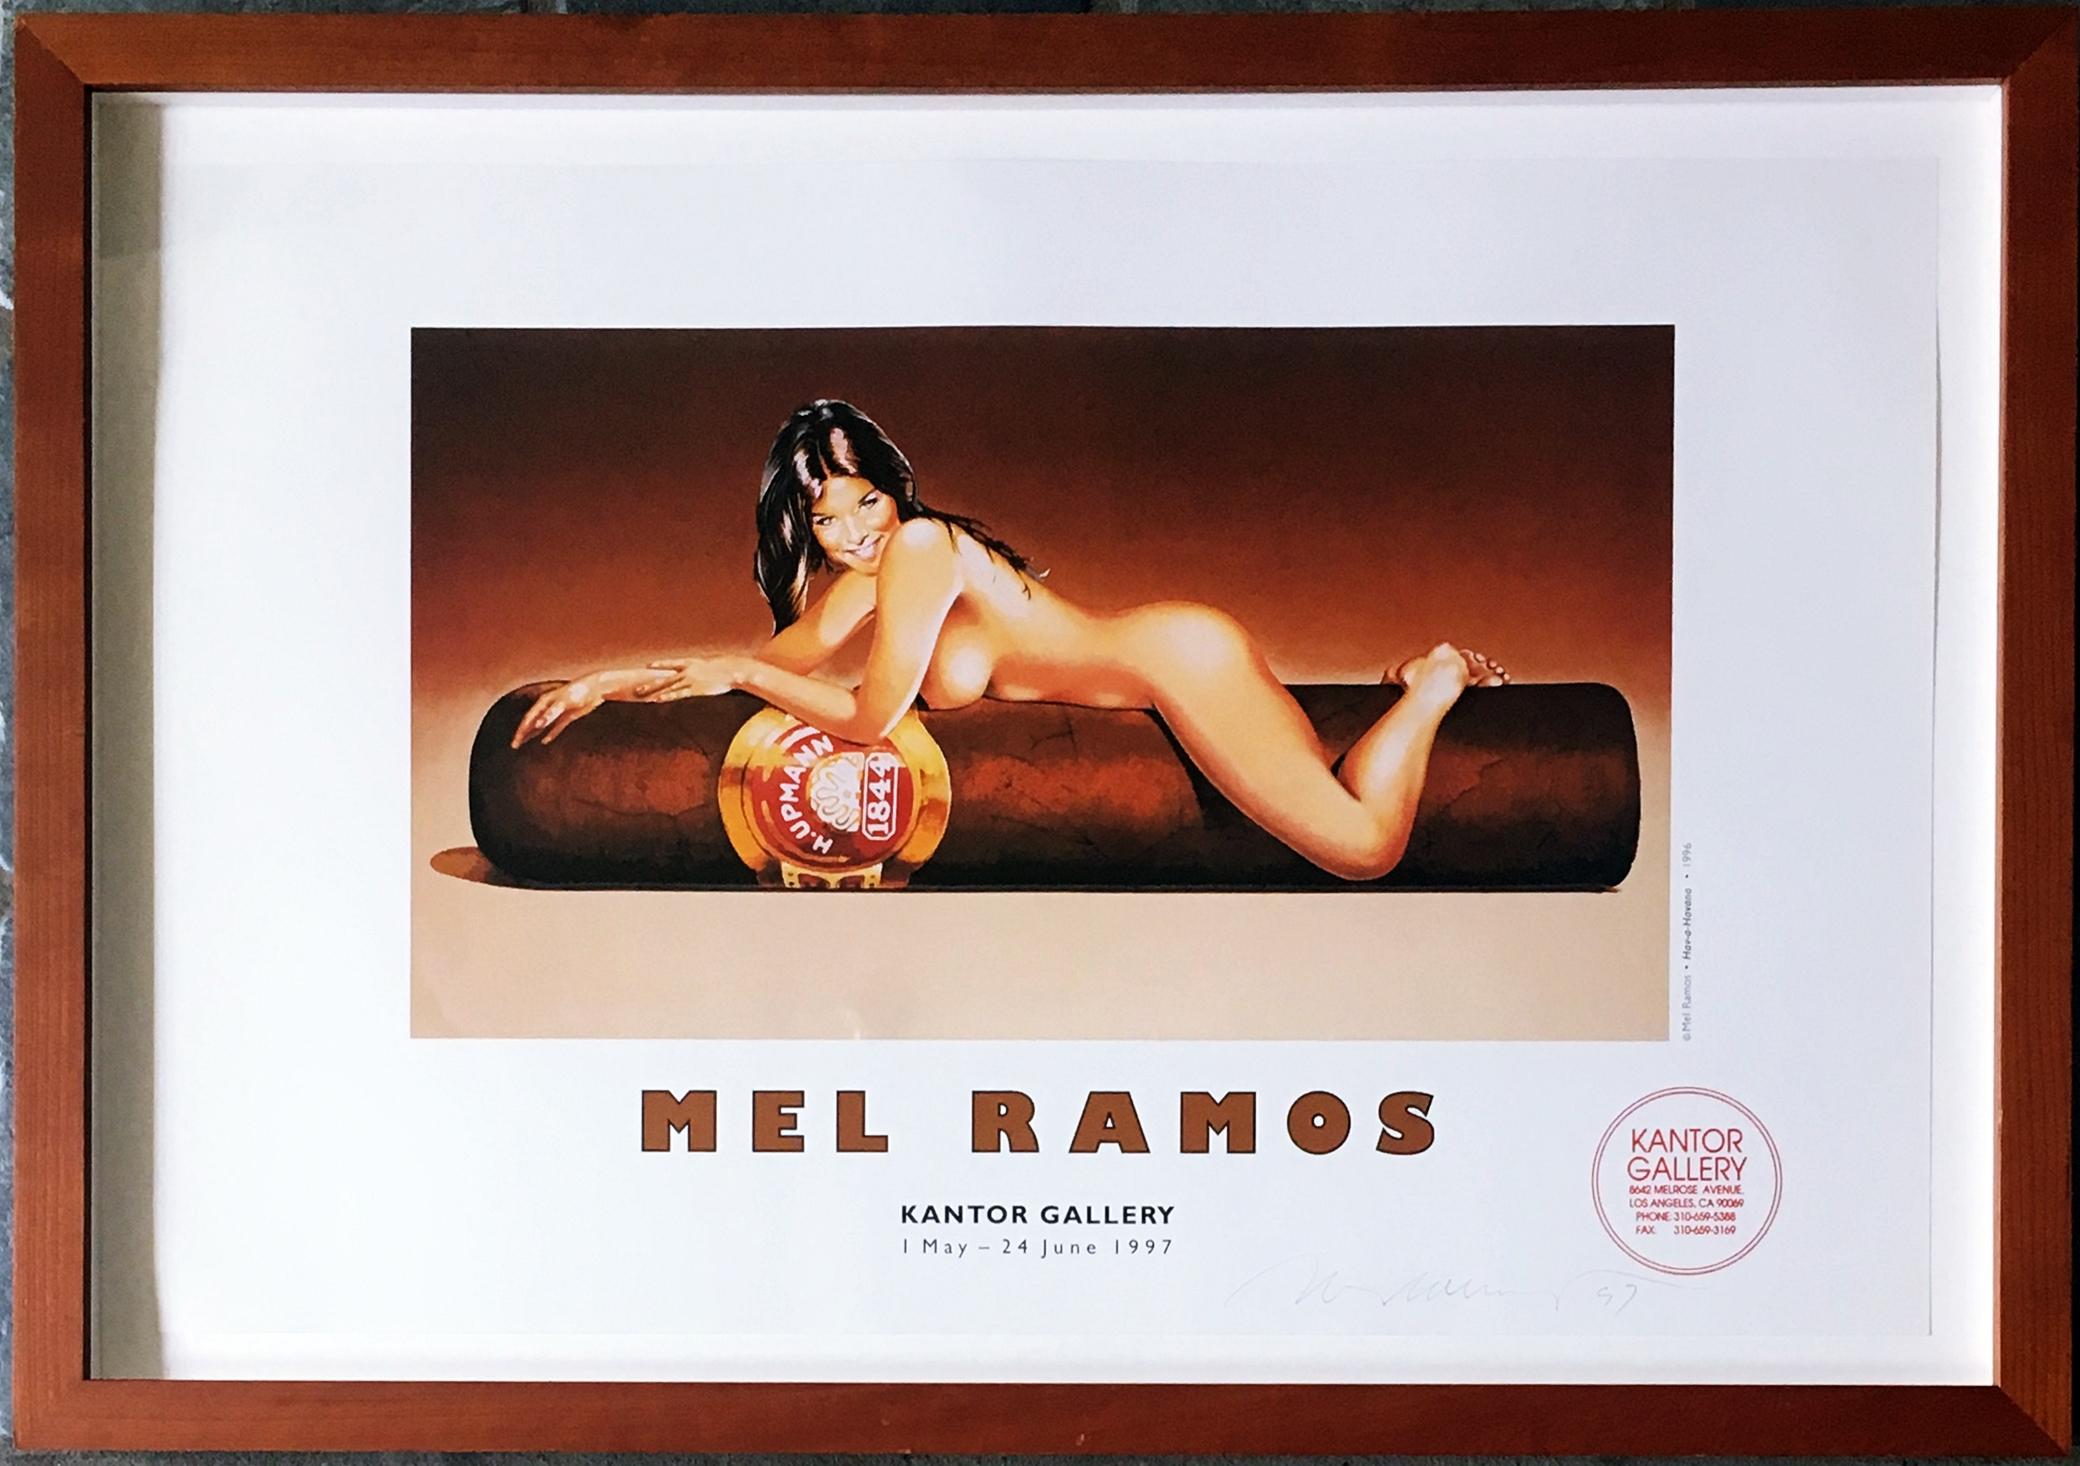 Hav-a-Havana Mel Ramos in Kantor-Galerie (Handsigniert von Mel Ramos)